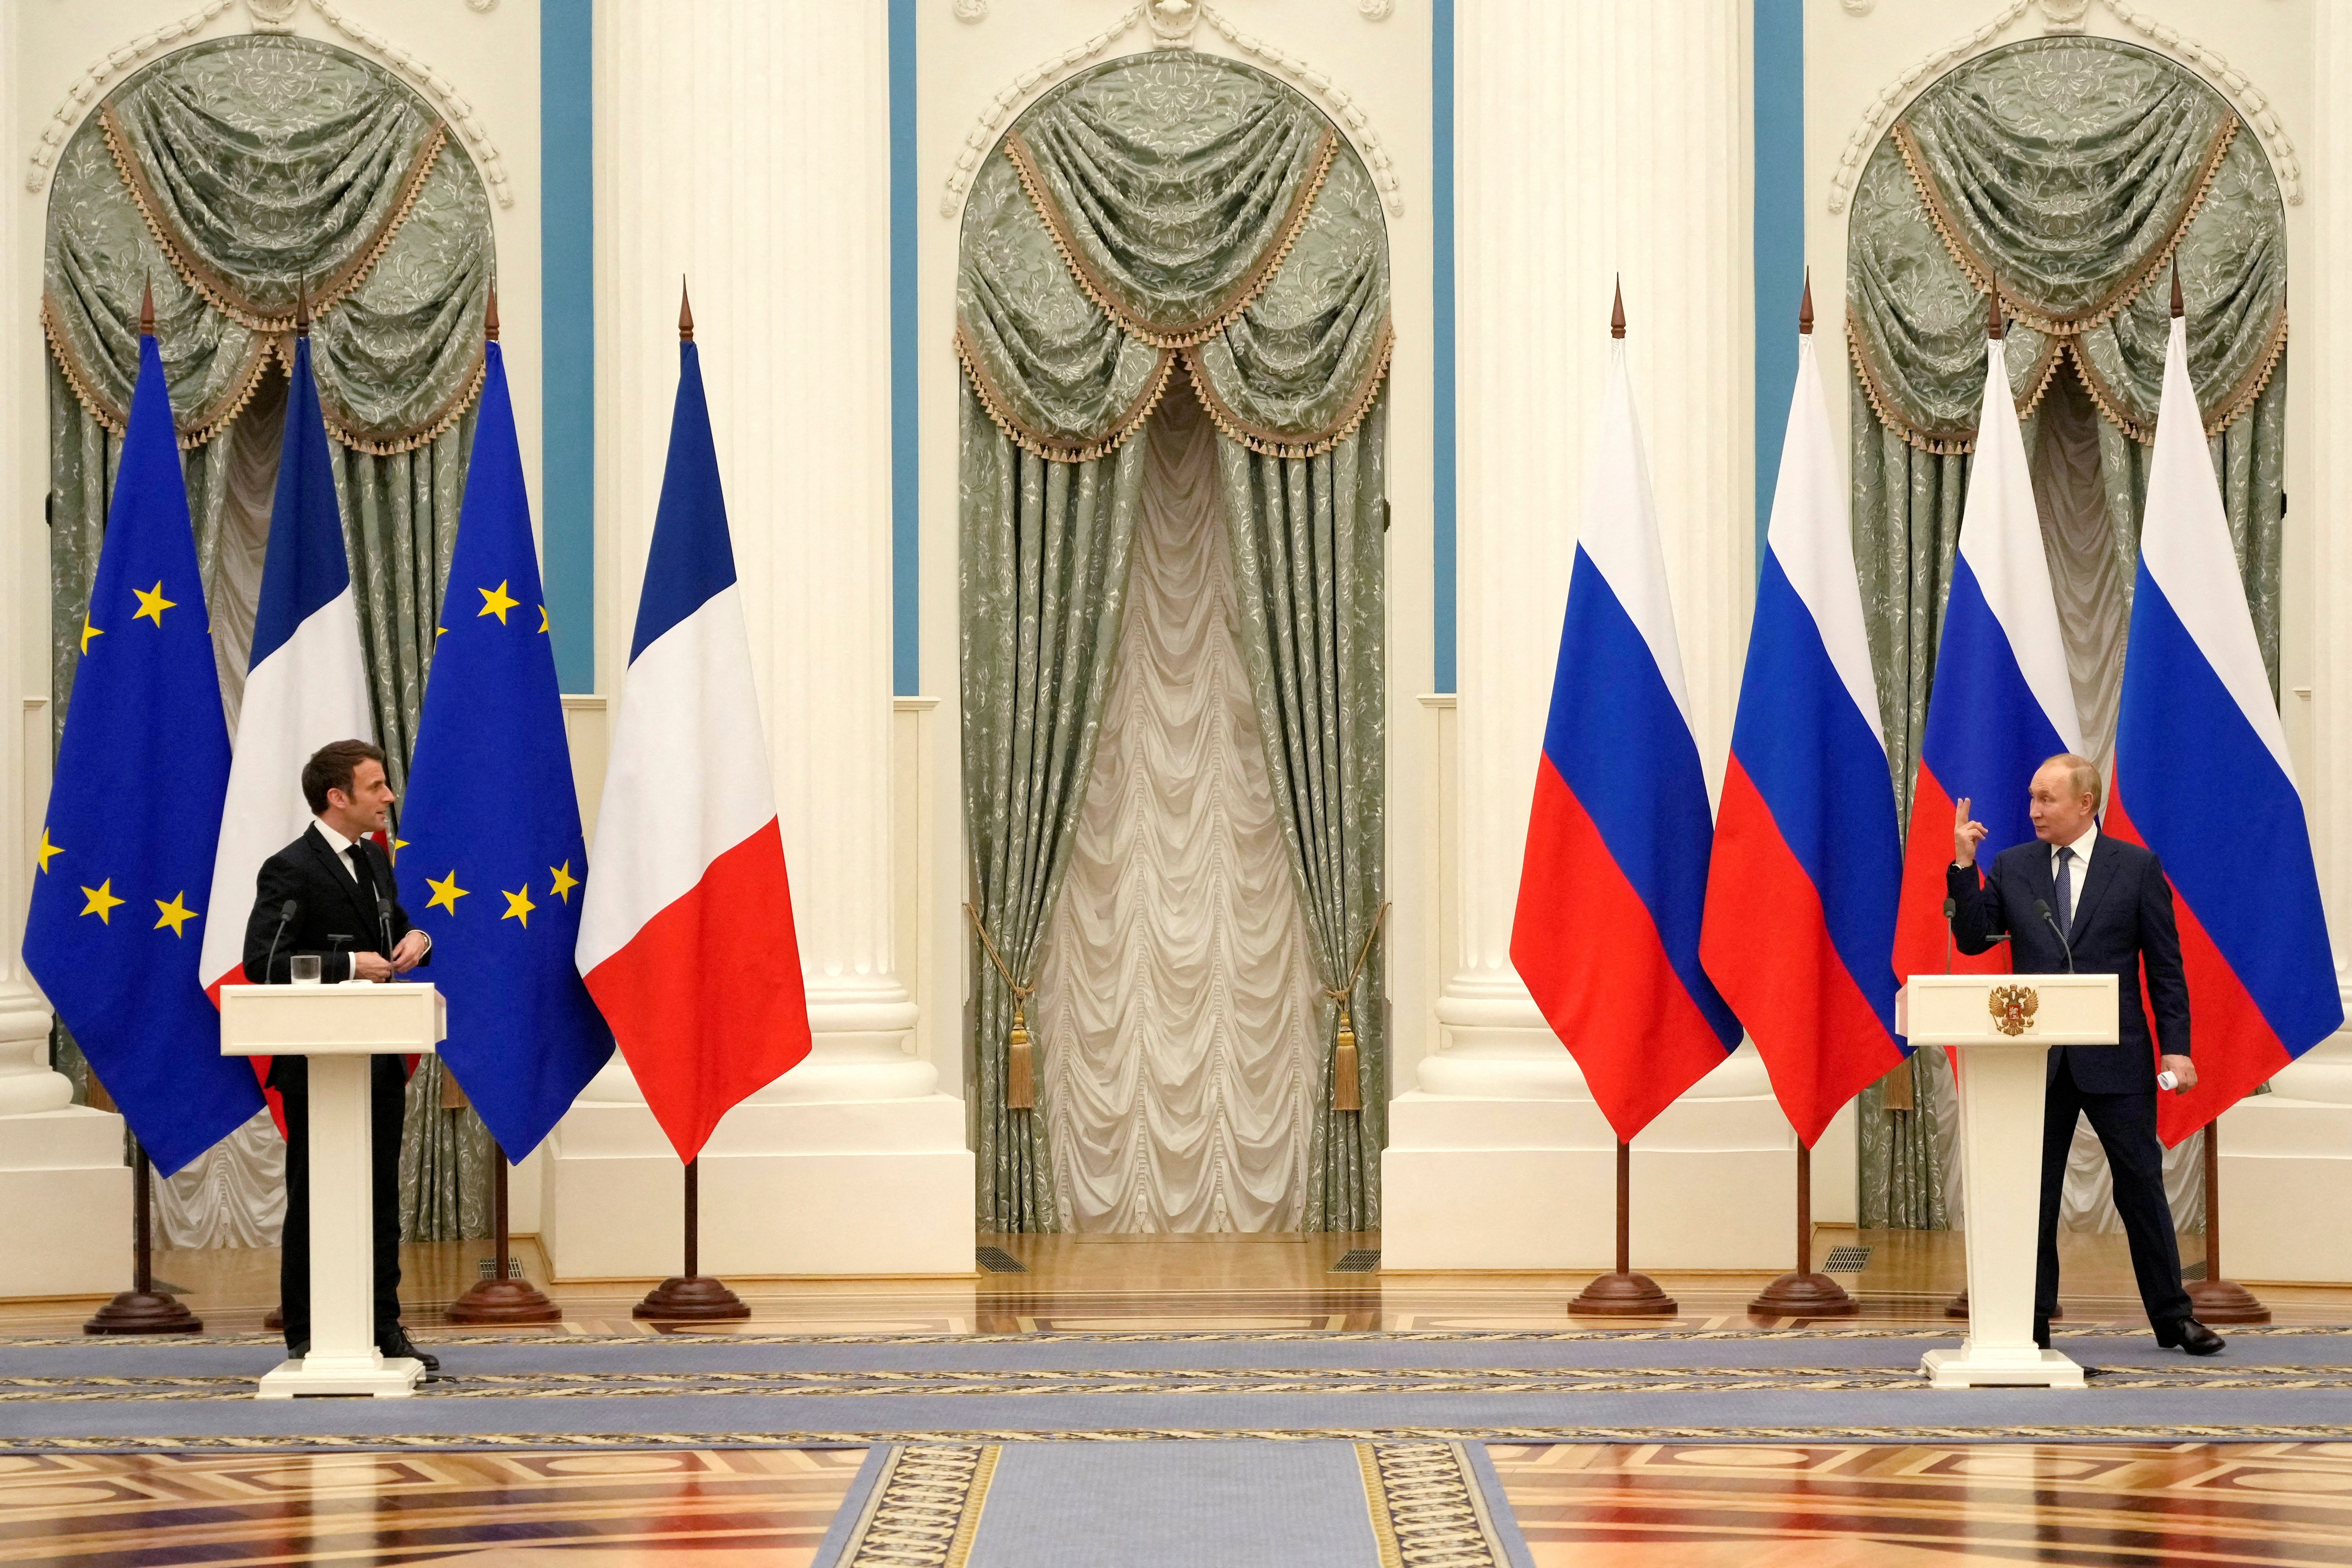 Las condiciones impuestas por el régimen ruso para un encuentro más estrecho no eran aceptables para el mandatario francés